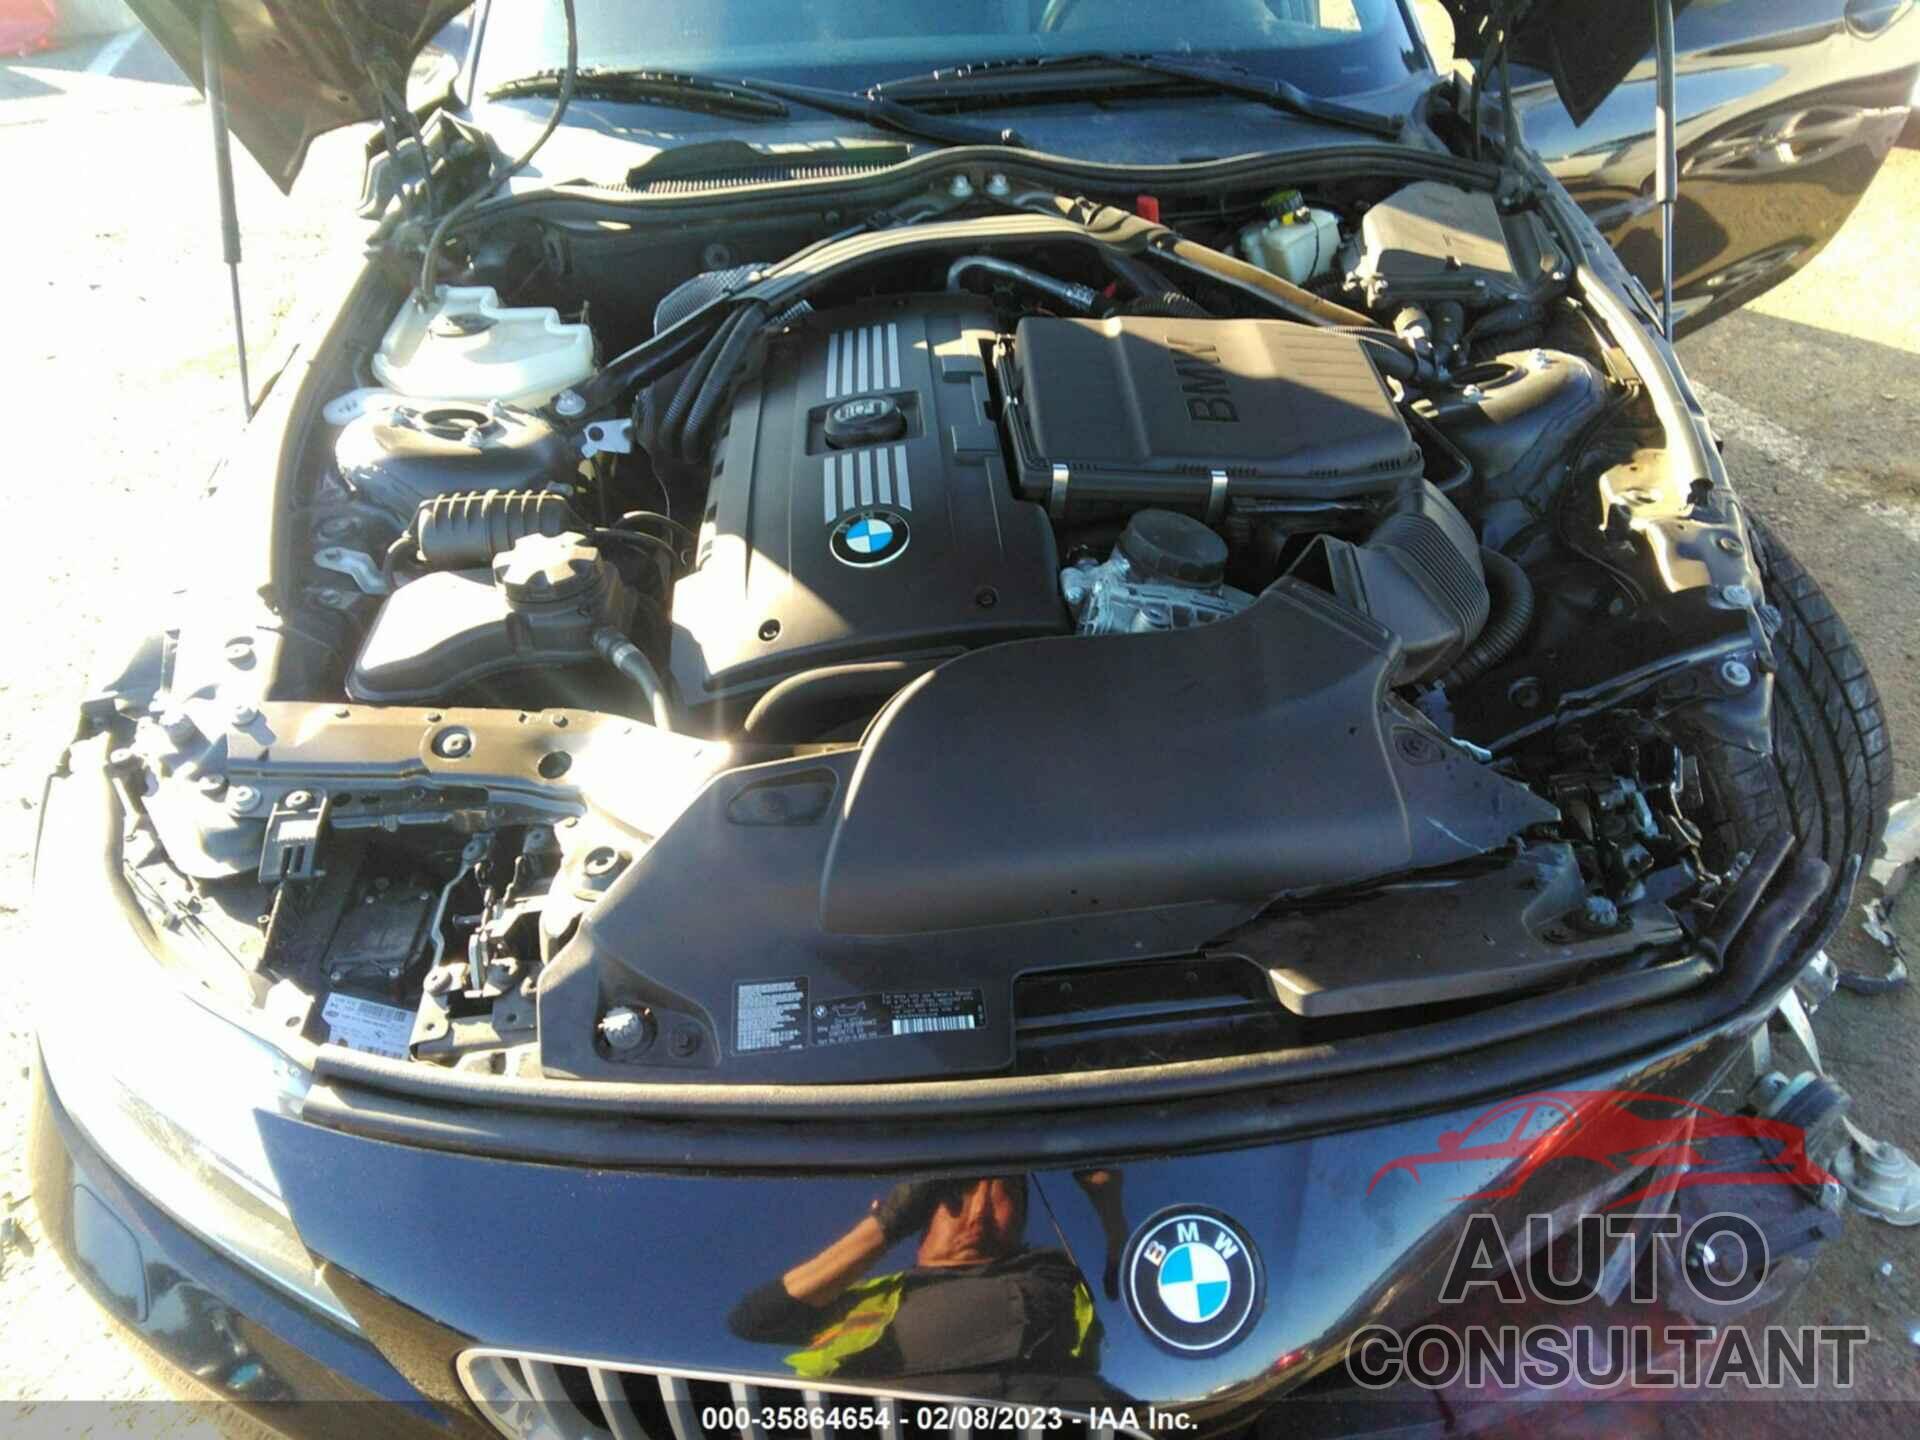 BMW Z4 2015 - WBALM1C51FE634389